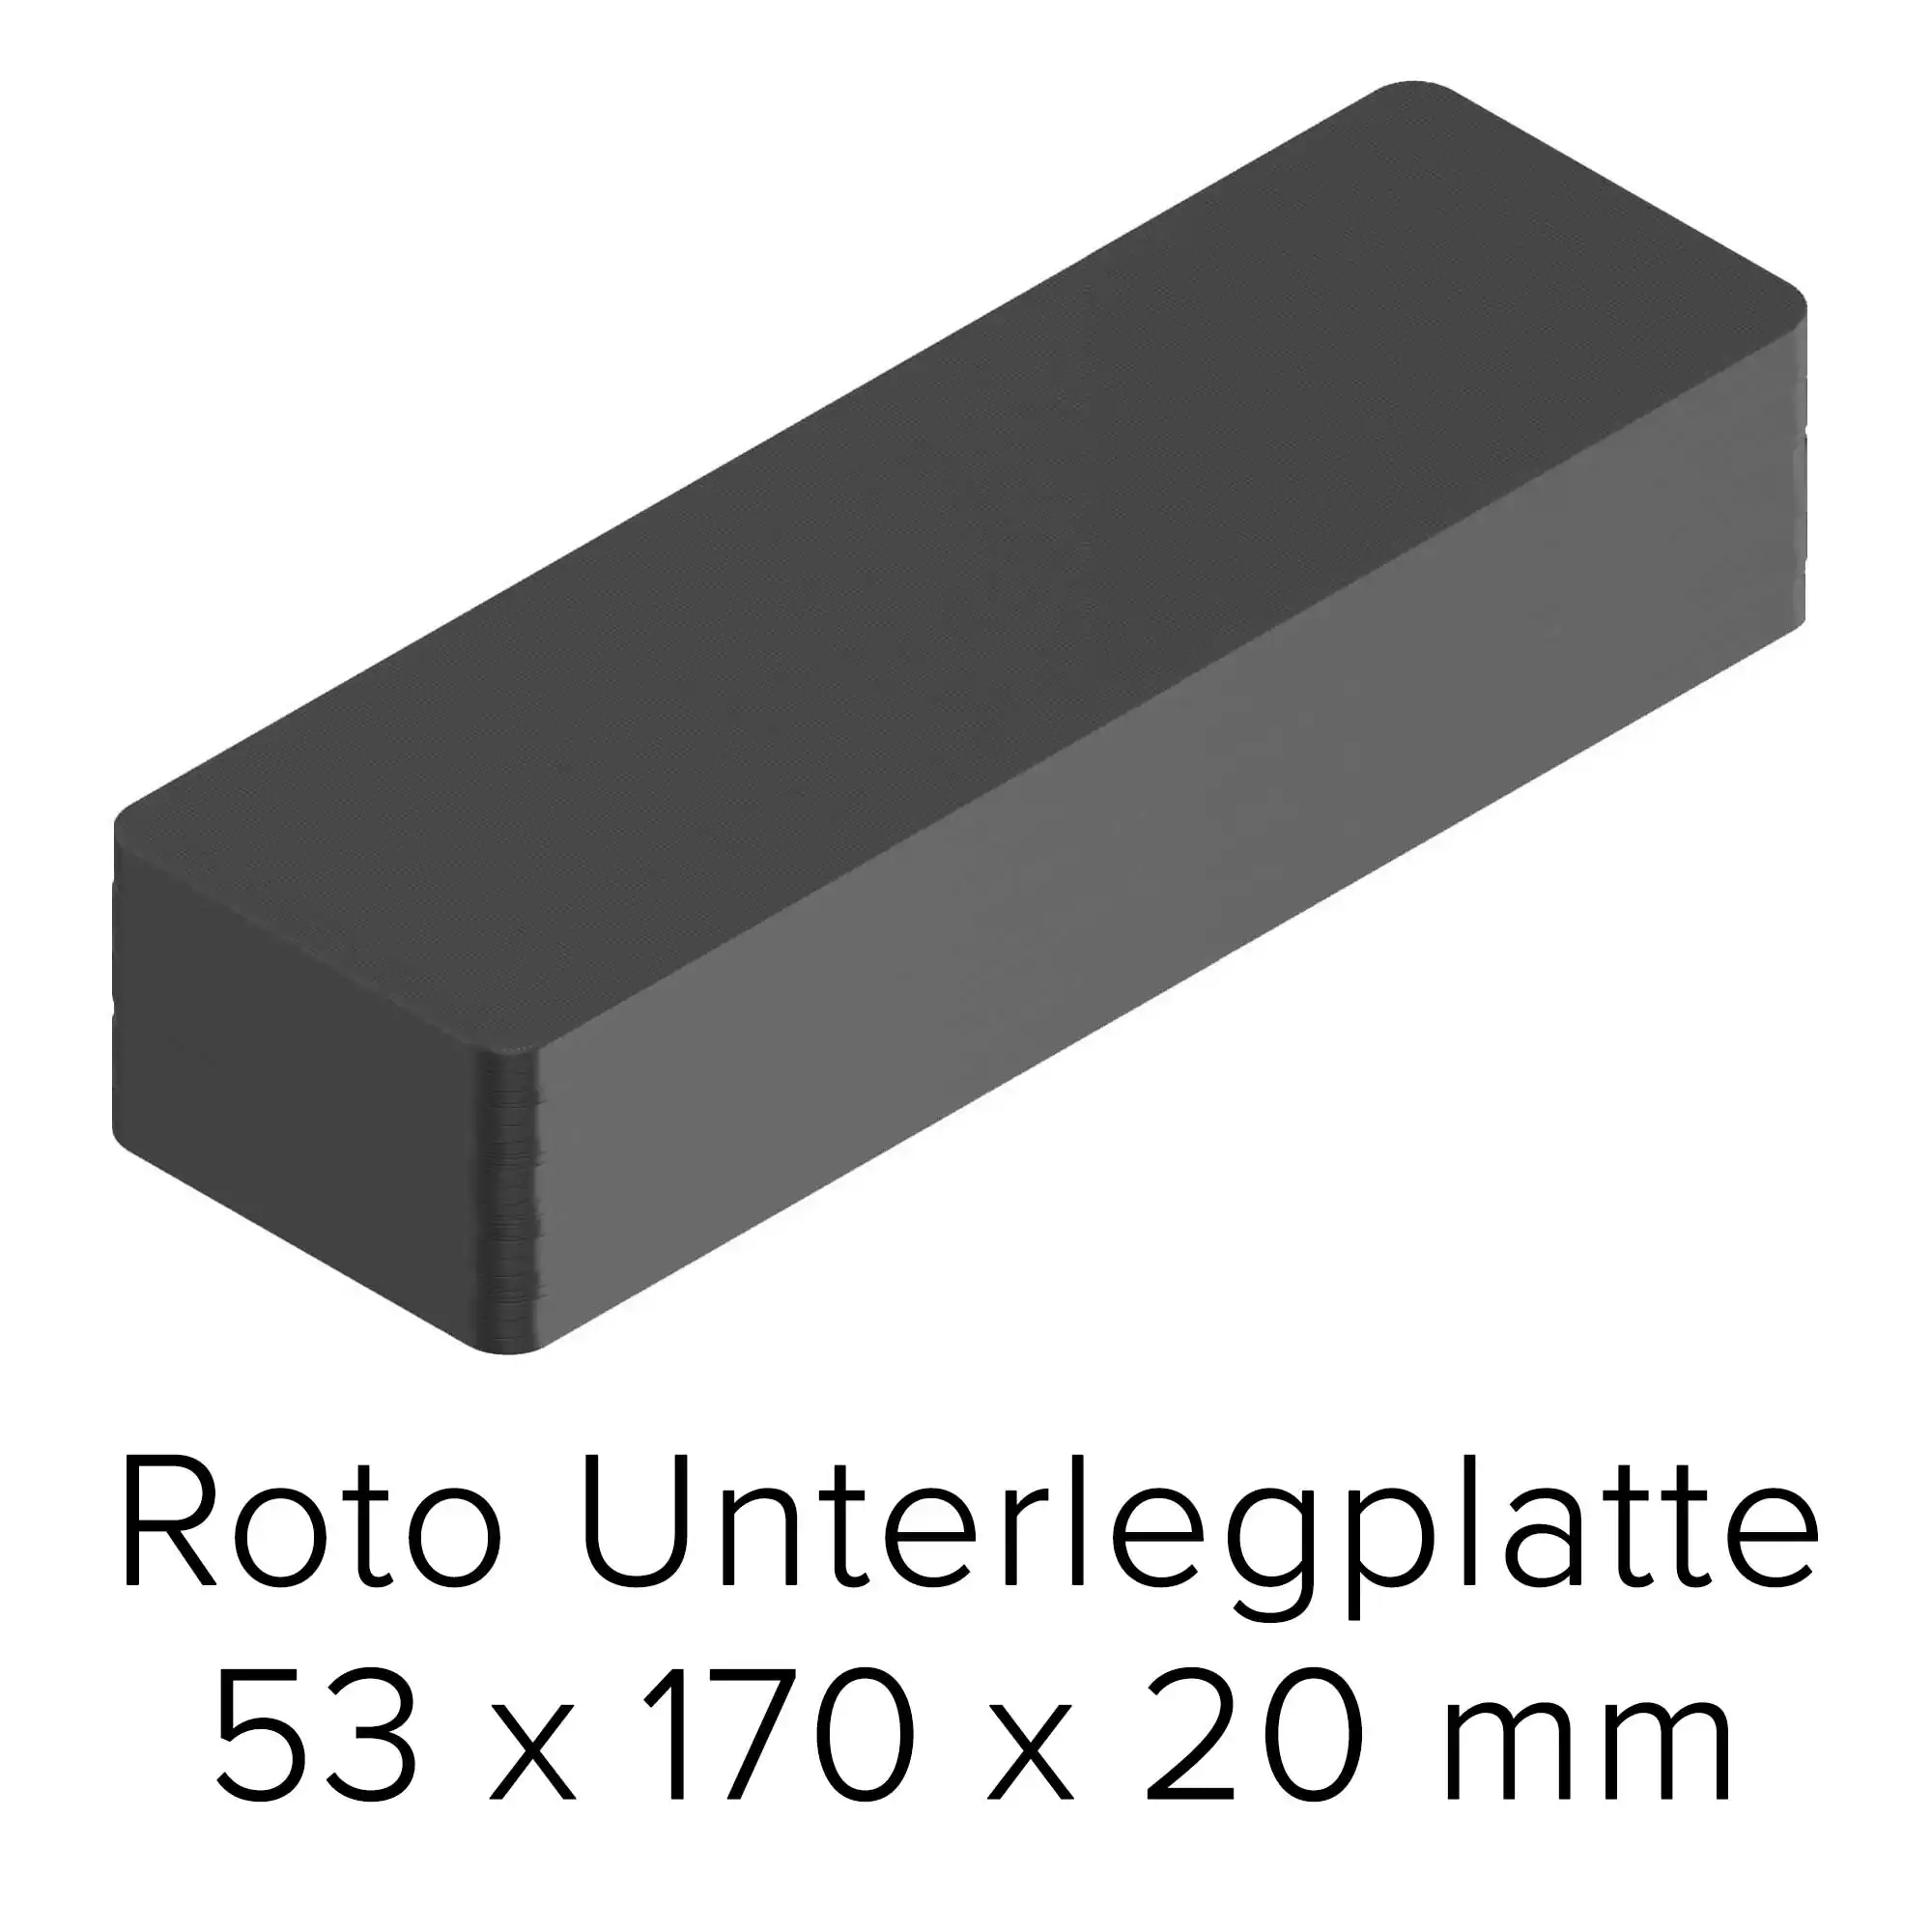 Roto Unterlegplatte 53 x 170 x 20 mm